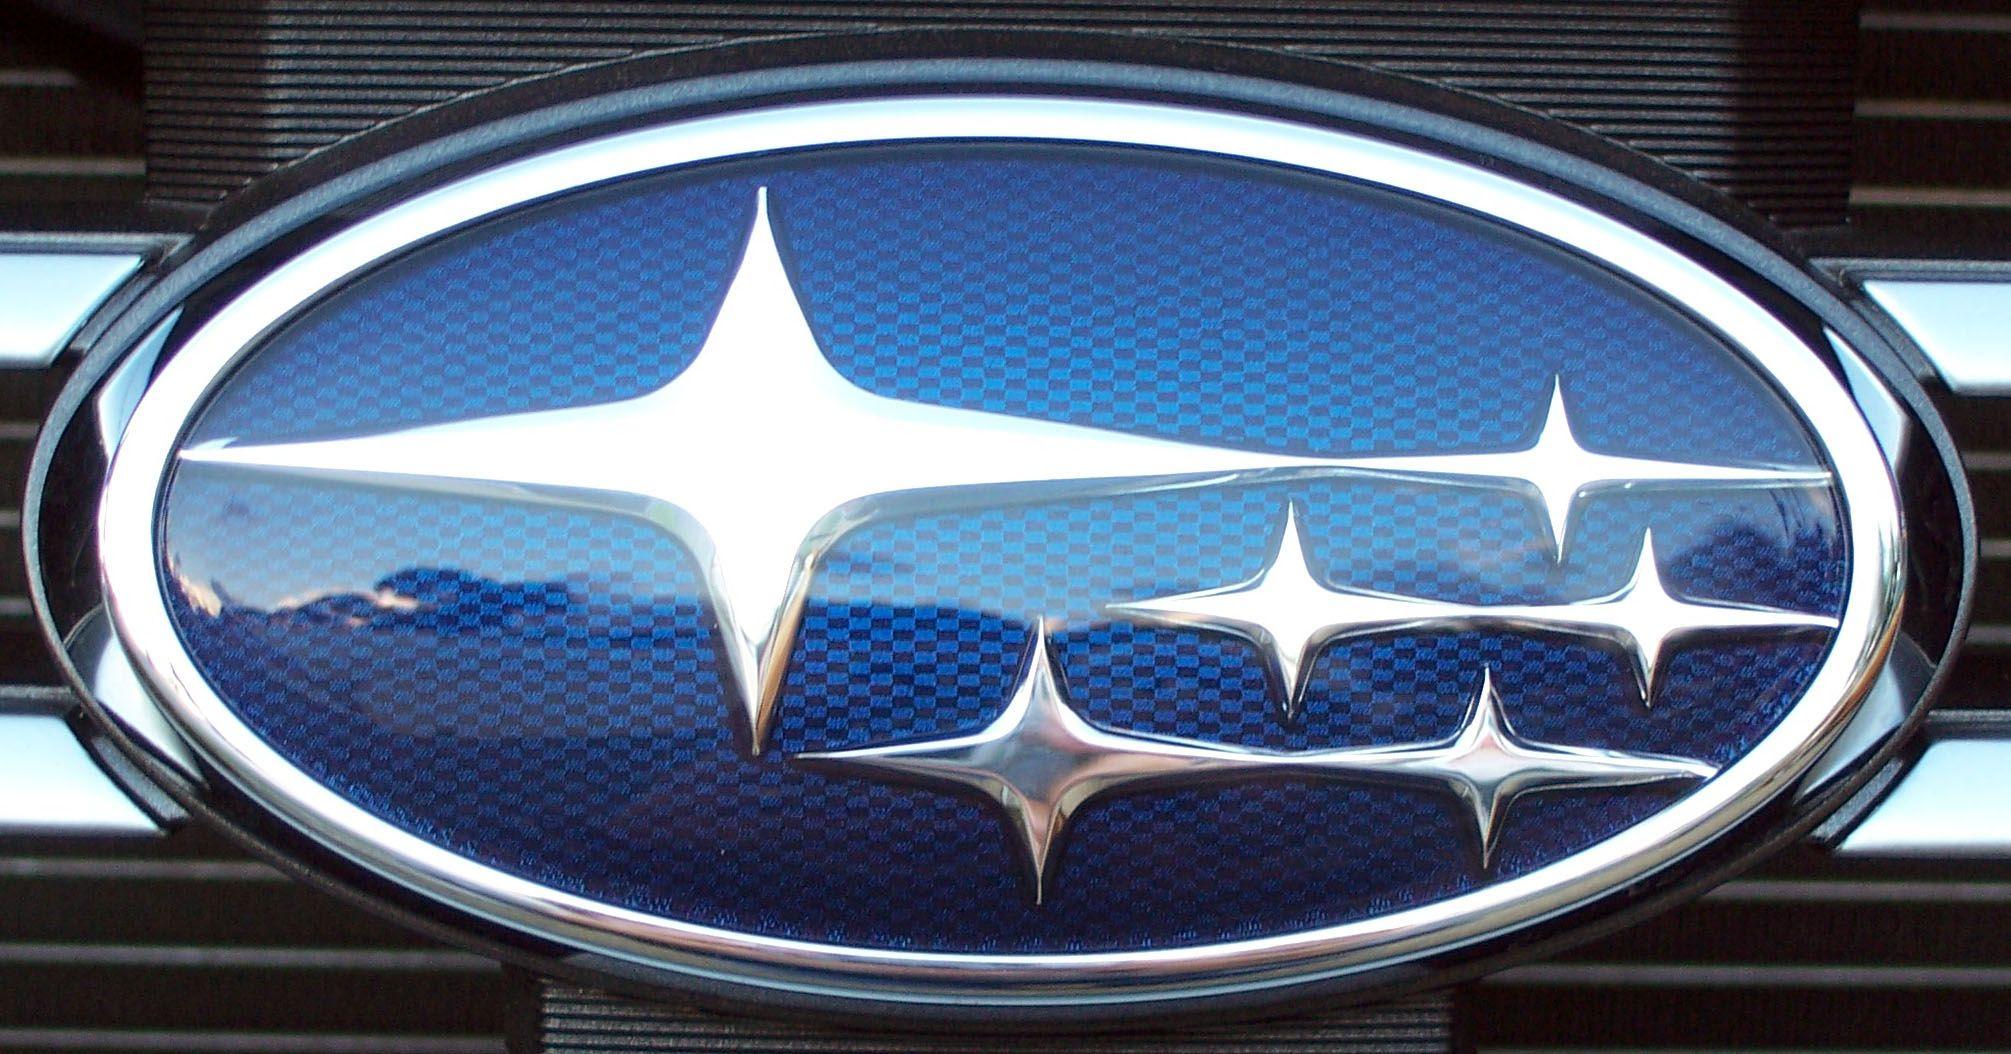 Oval Car Logo - Subaru Logo, Subaru Car Symbol Meaning and History | Car Brand Names.com